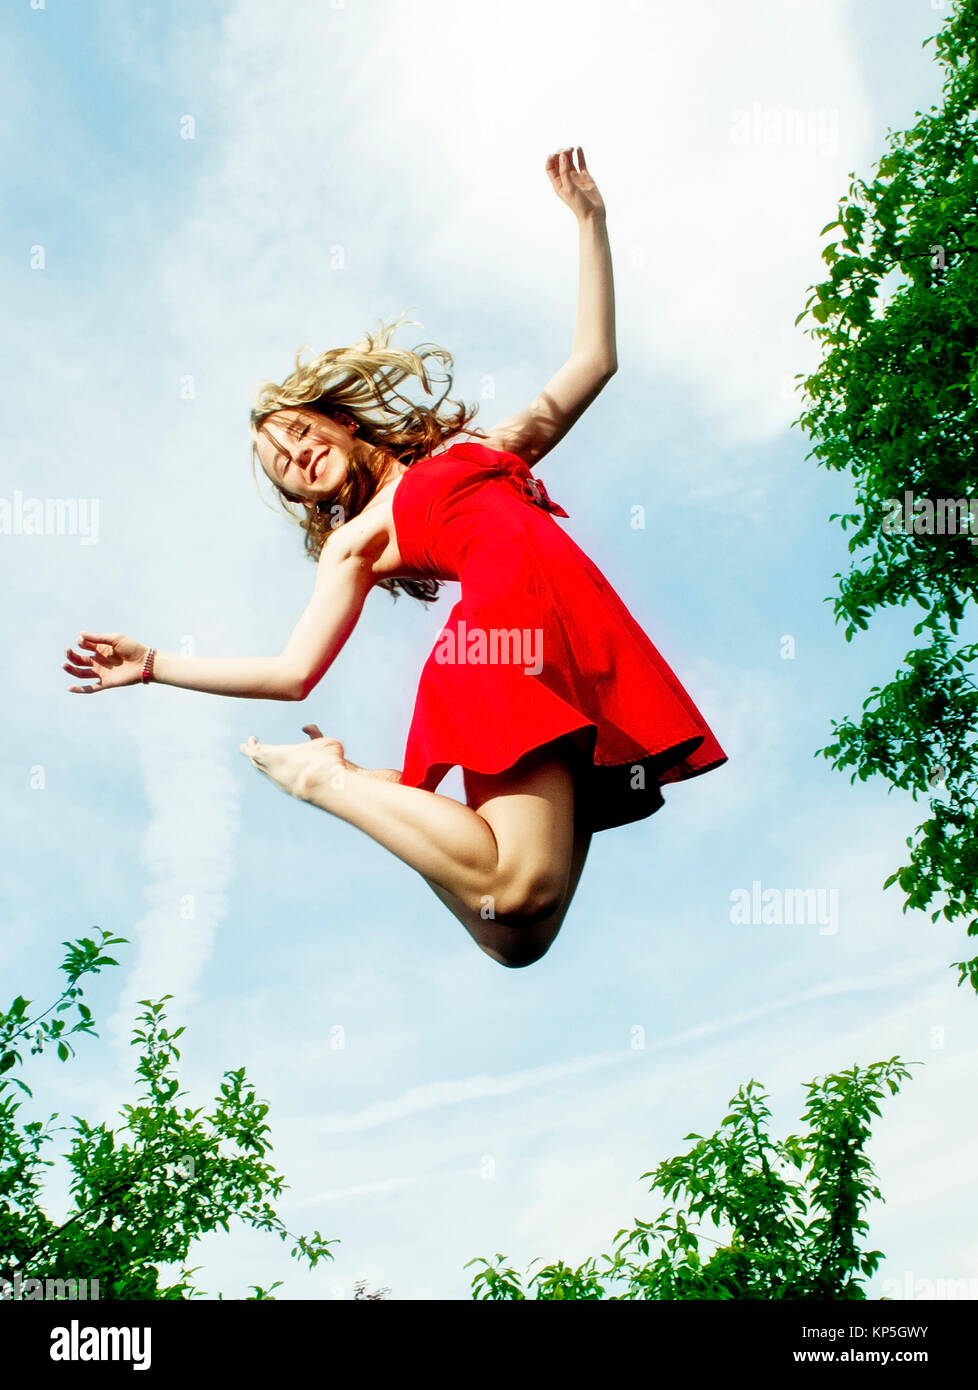 Maedchen springendes - ragazza di salto Foto Stock